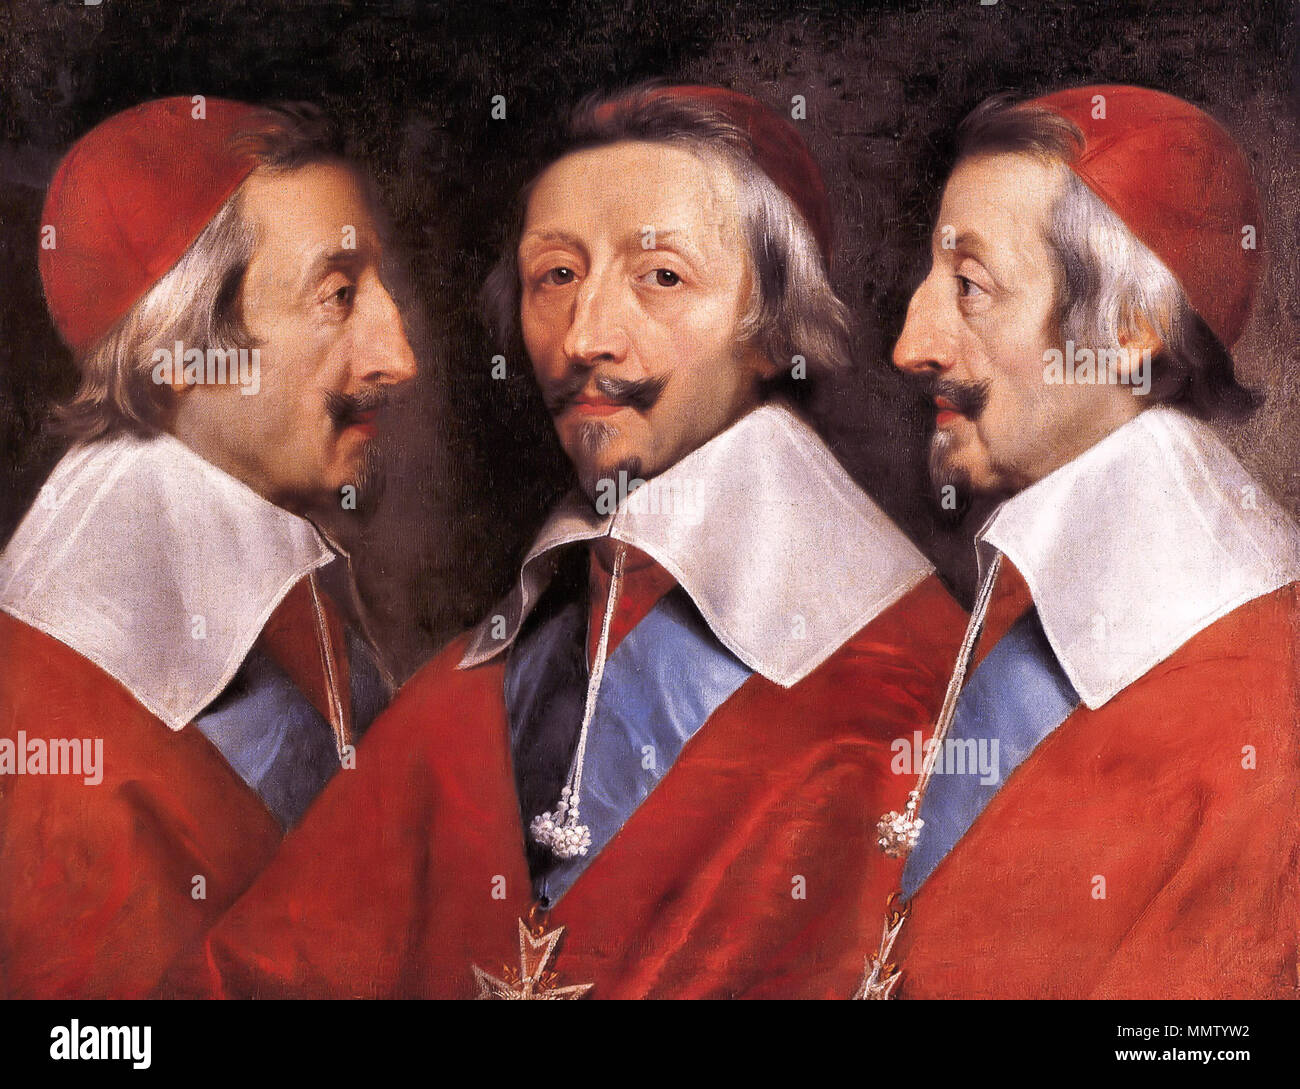 . Armand-Jean du Plessis, Duc und Kardinal de Richelieu (1585-1642), mit der Bestellung von Saint-Esprit. Er wurde ein Kardinal im Jahr 1622 und dem Ministerpräsidenten von Frankreich. Triple Portrait von Cardinal de Richelieu. ca. 1642. Kardinaal de Richelieu Stockfoto